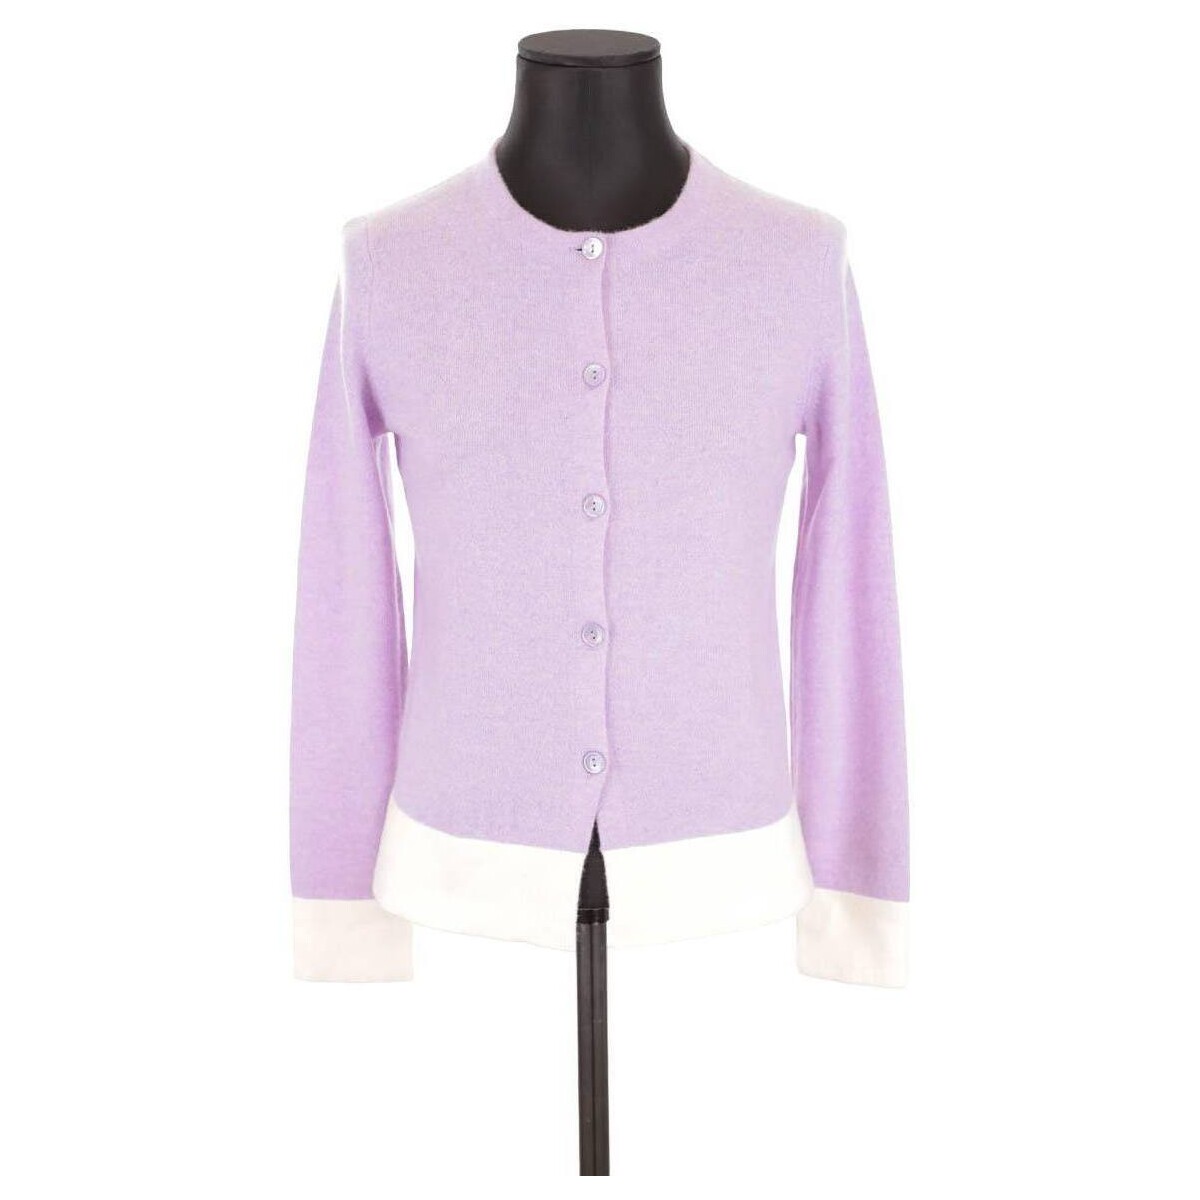 Vêtements Femme Tripack Organic Cotton T-shirt Gilet en cachemire Violet